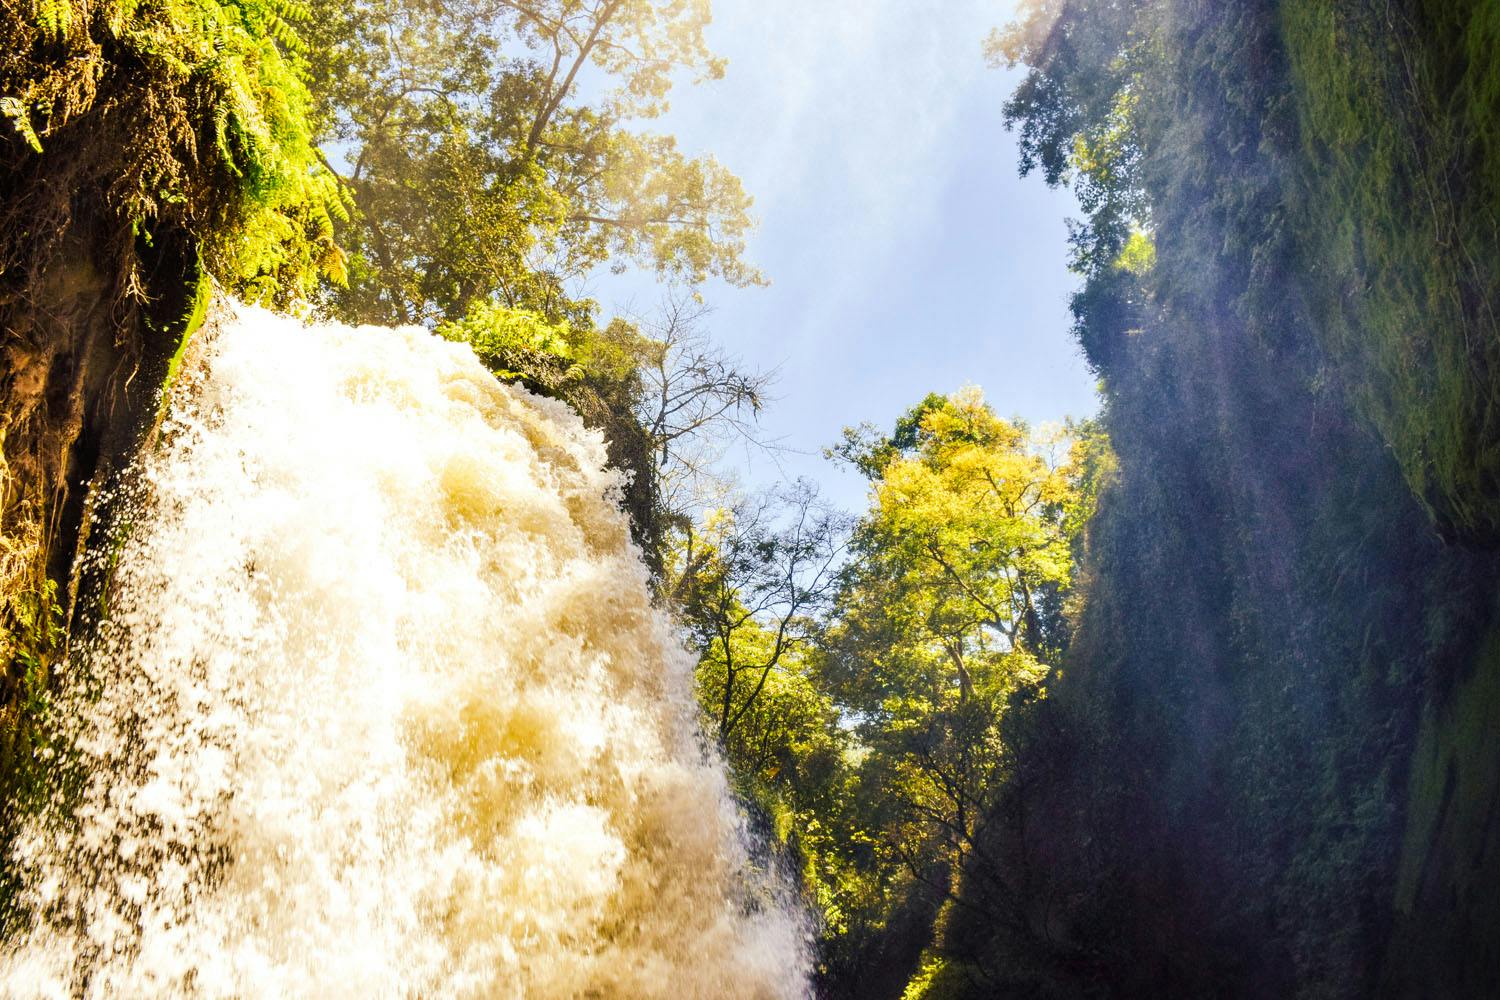 Bangsring Breeze trips to the Belawan hotsprings and waterfall